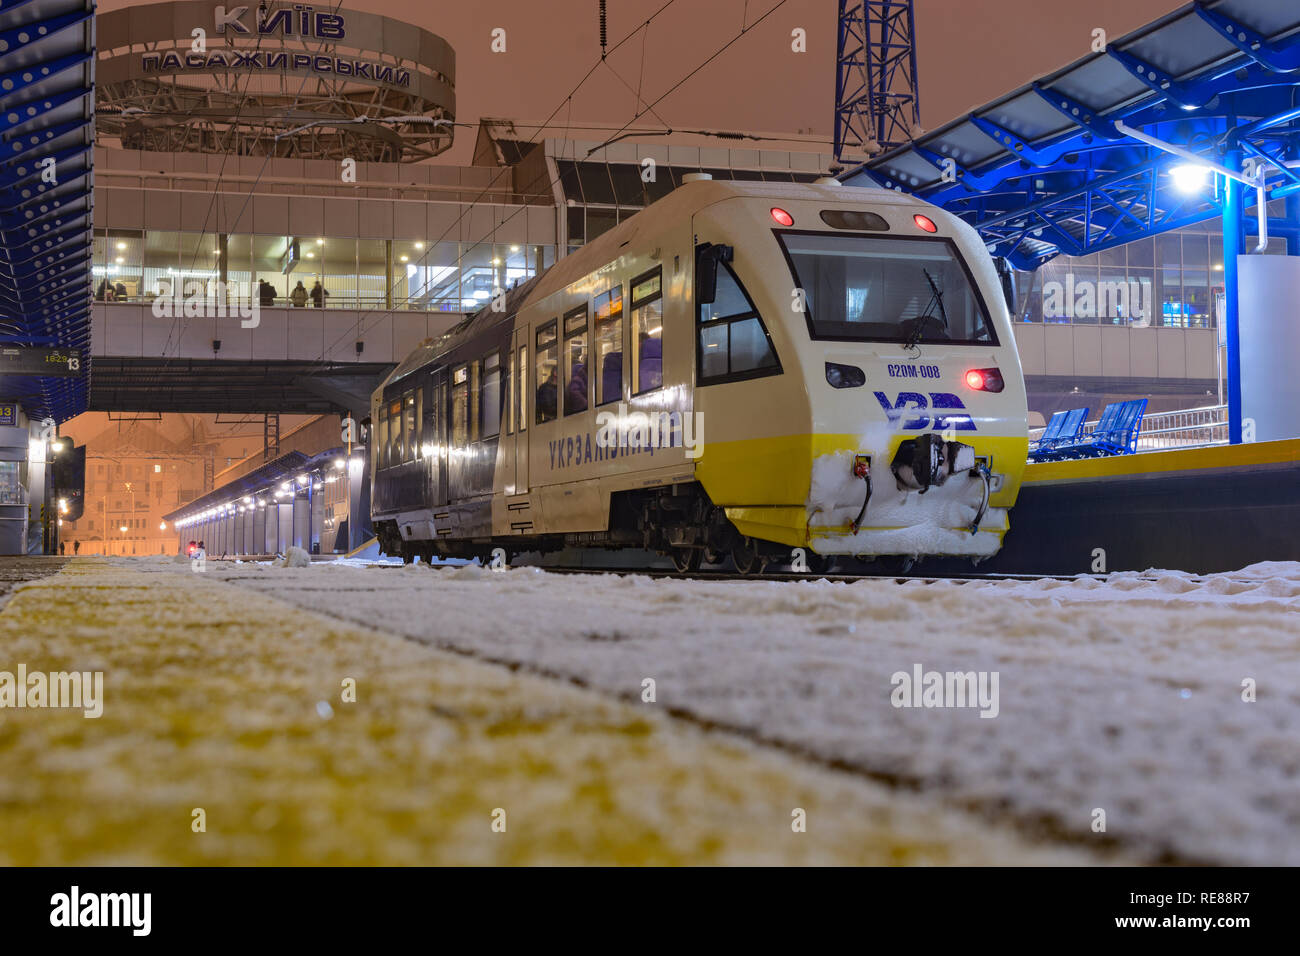 Kiew, Ukraine - Dezember 14, 2018: Renovierte Triebwagen Pesa für die neue Route der Ukrainischen Eisenbahn - Kyiv-Boryspil Flughafen. Stockfoto